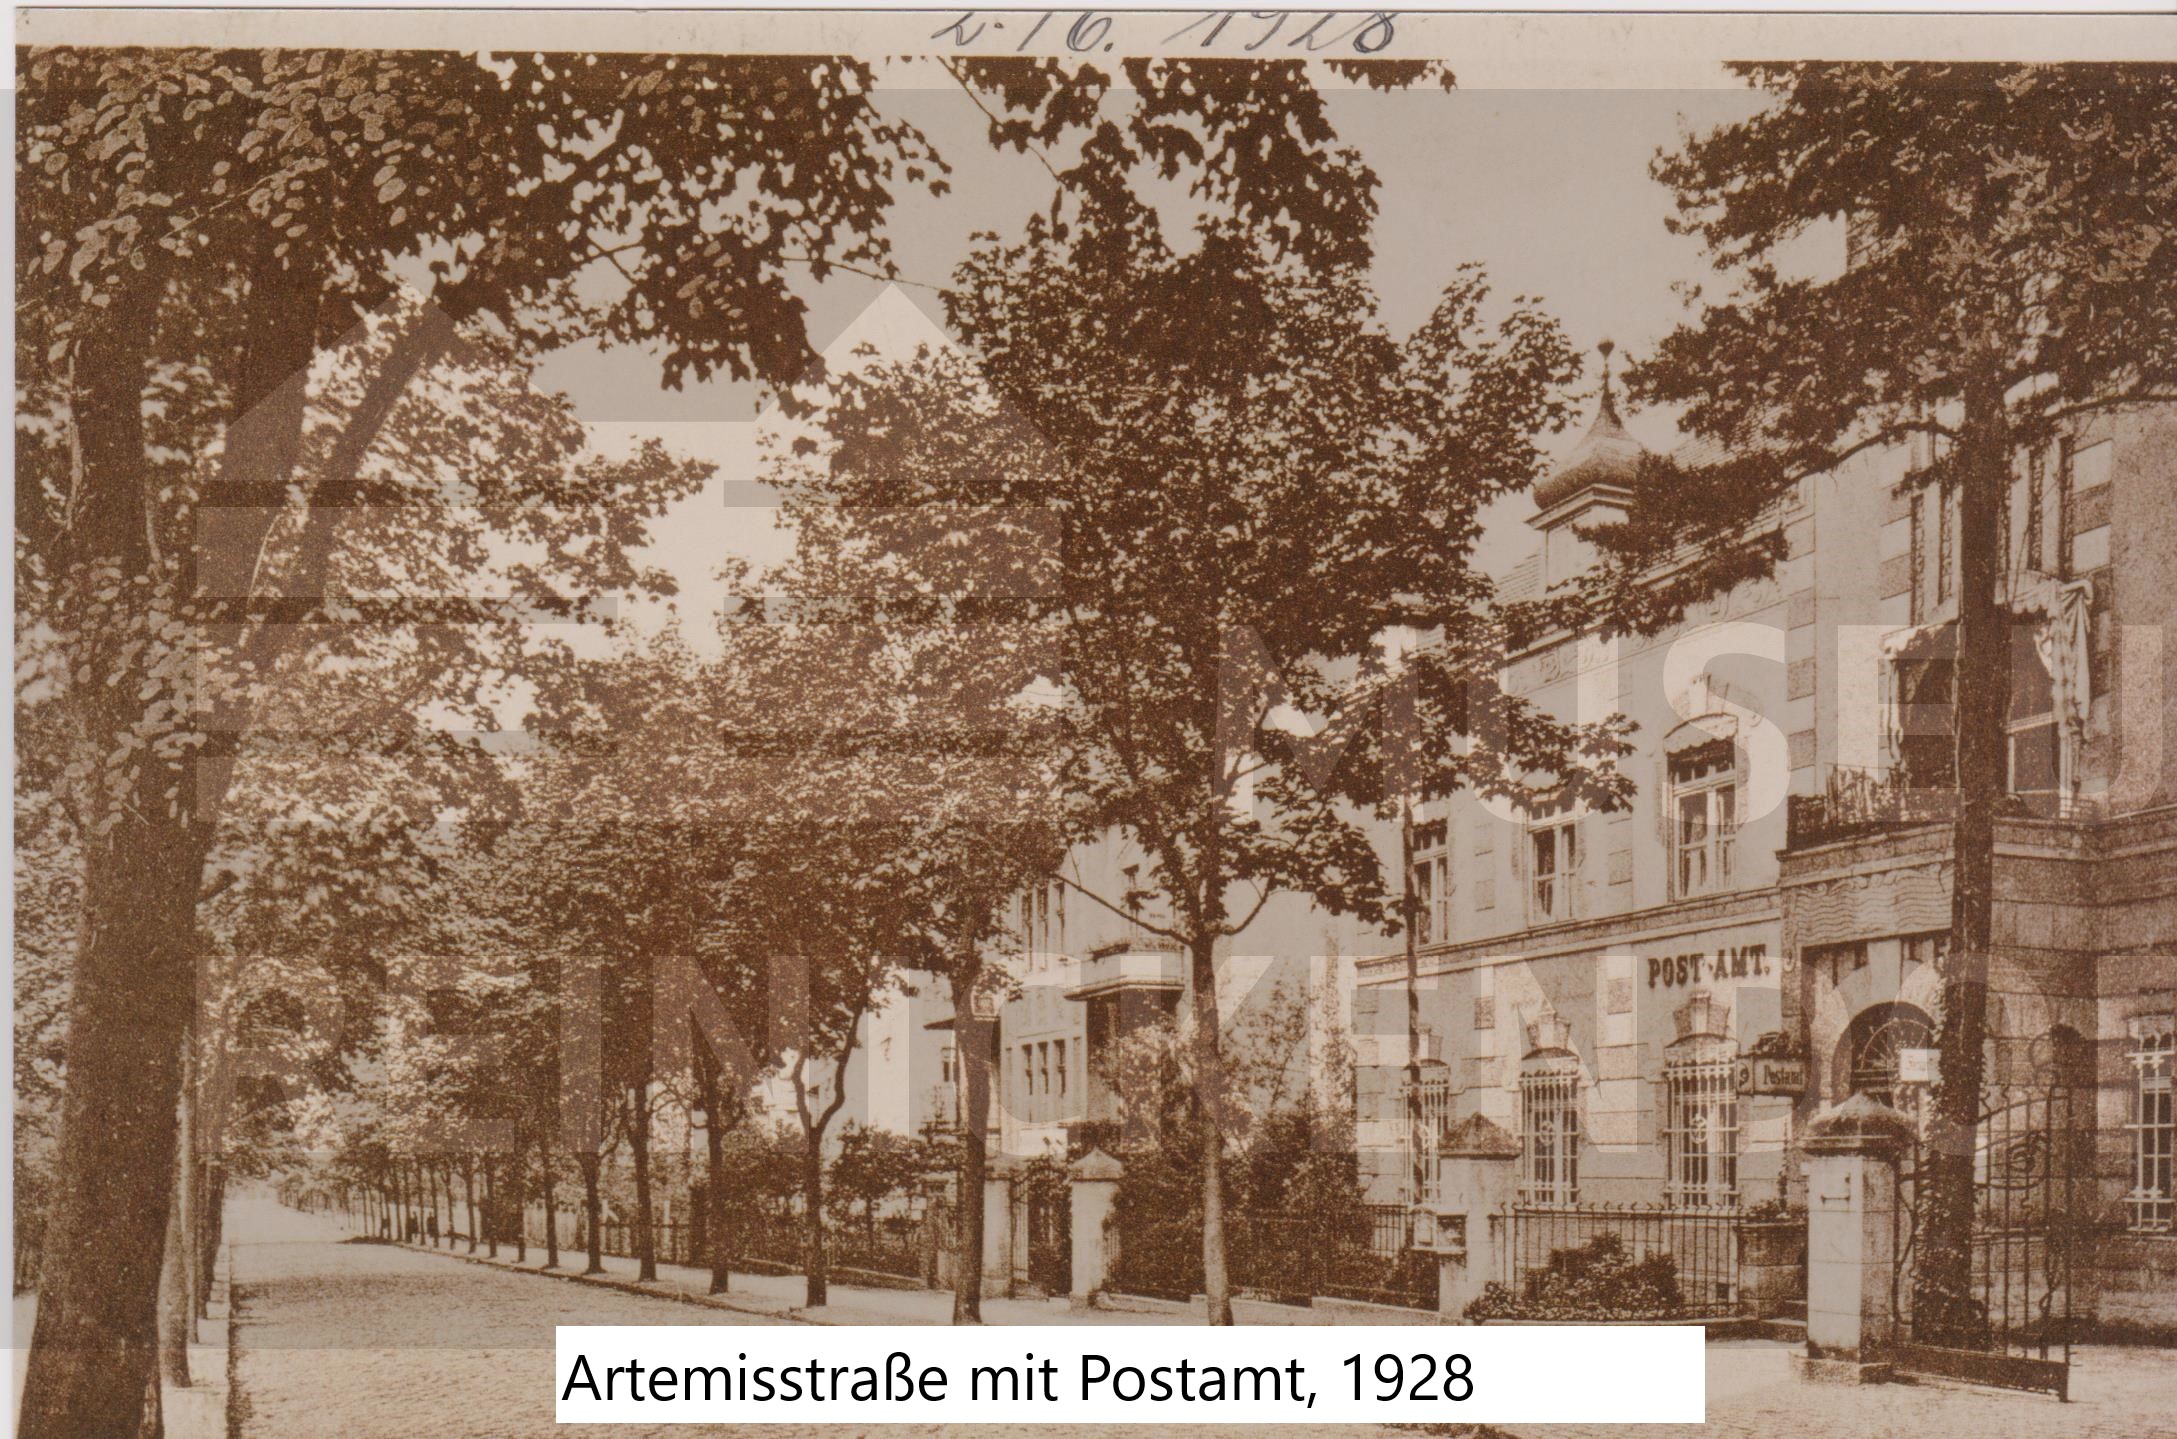 Artemisstr. mit Postamt, 1928